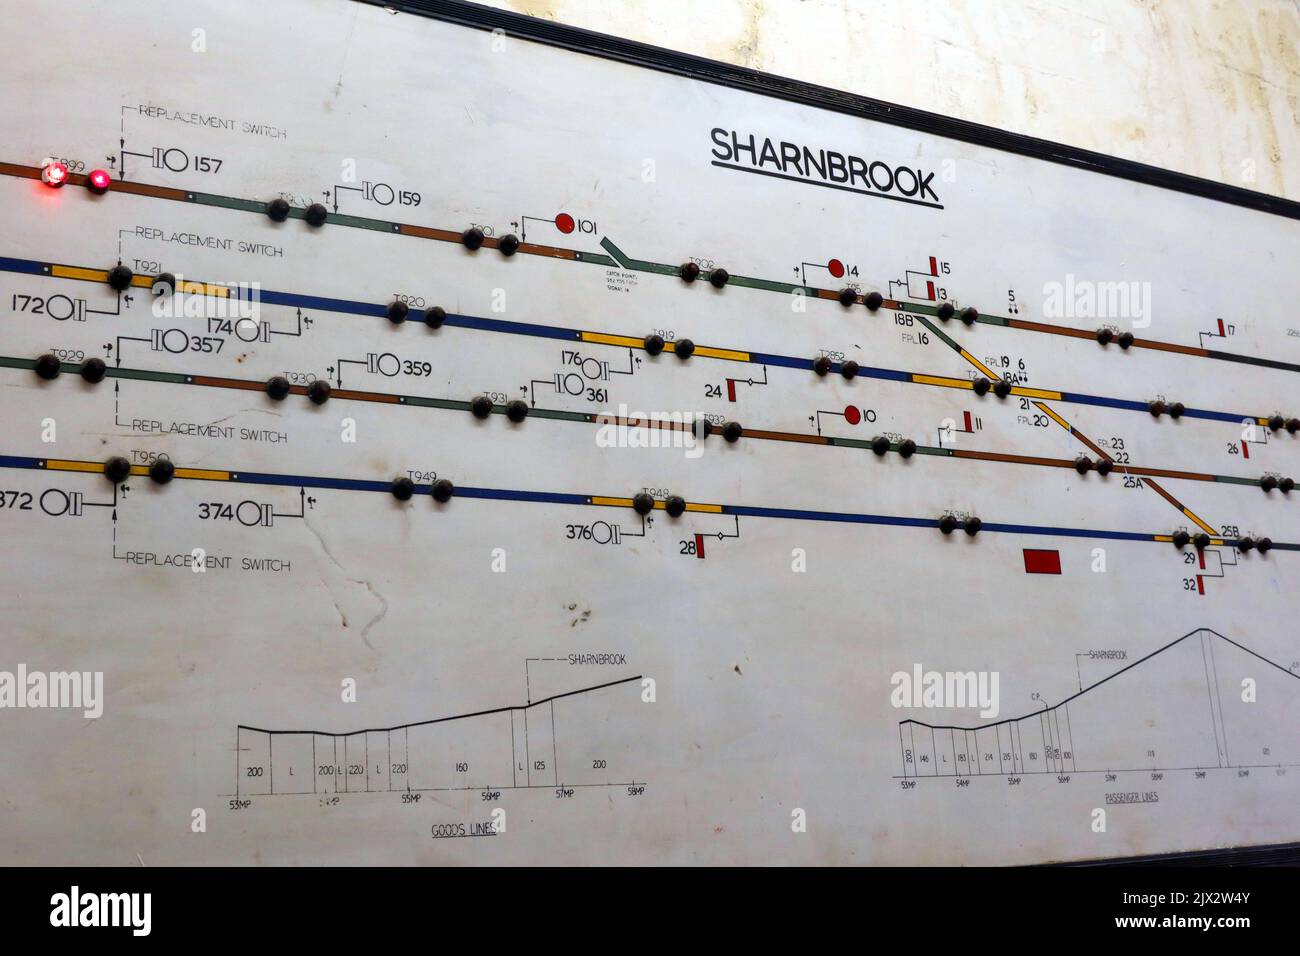 Schéma du chemin de fer de la boîte de signalisation Sharnbrook, avec voyants, centre du patrimoine Crewe, Cheshire, Angleterre, ROYAUME-UNI Banque D'Images